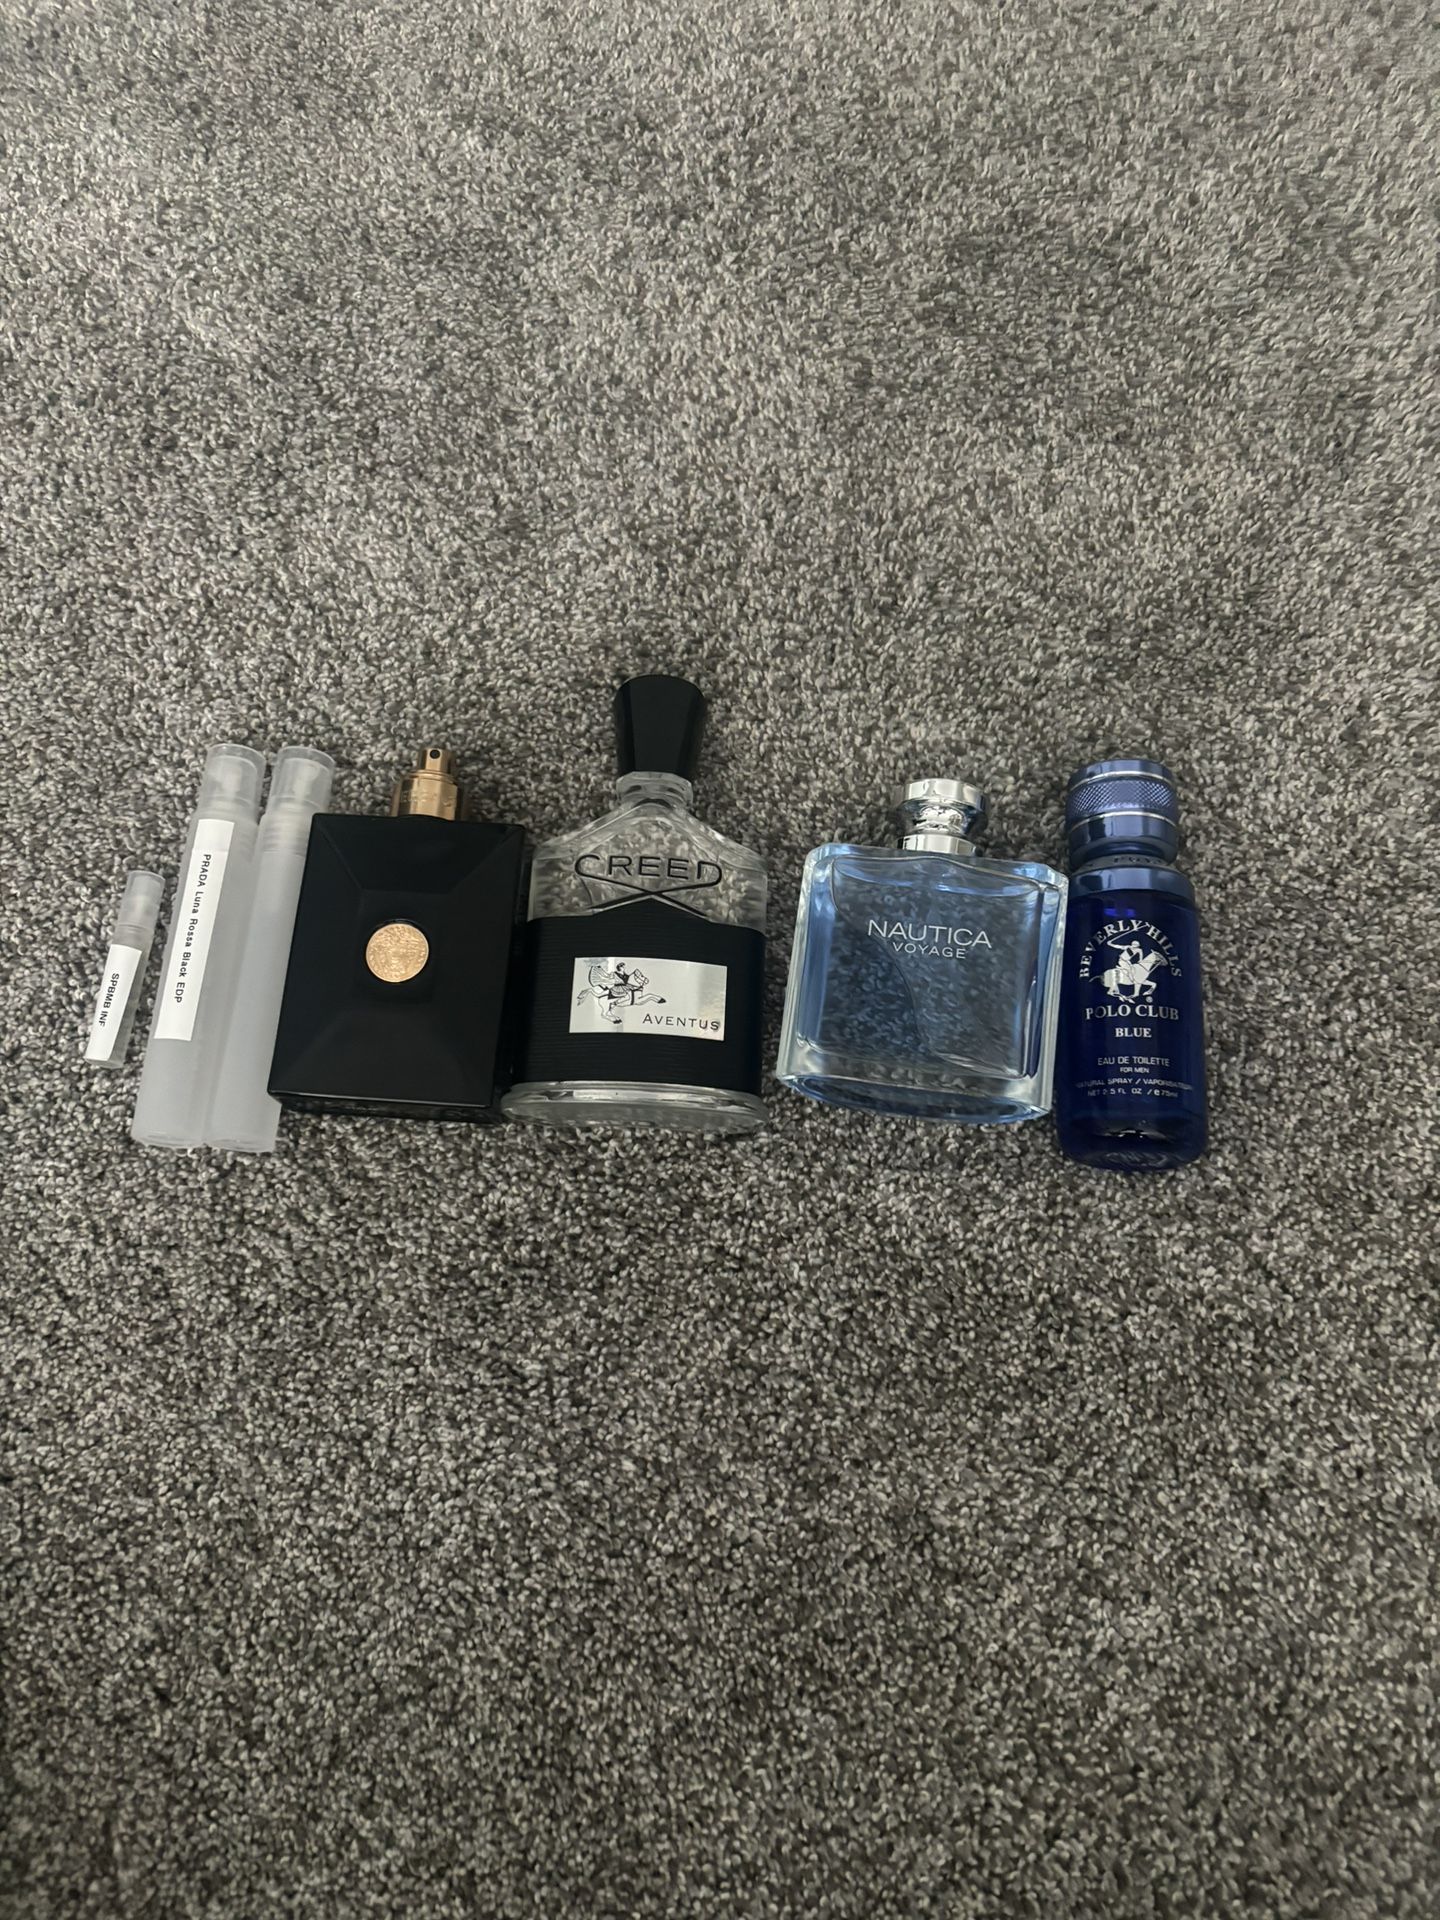 3ml fragrance samples